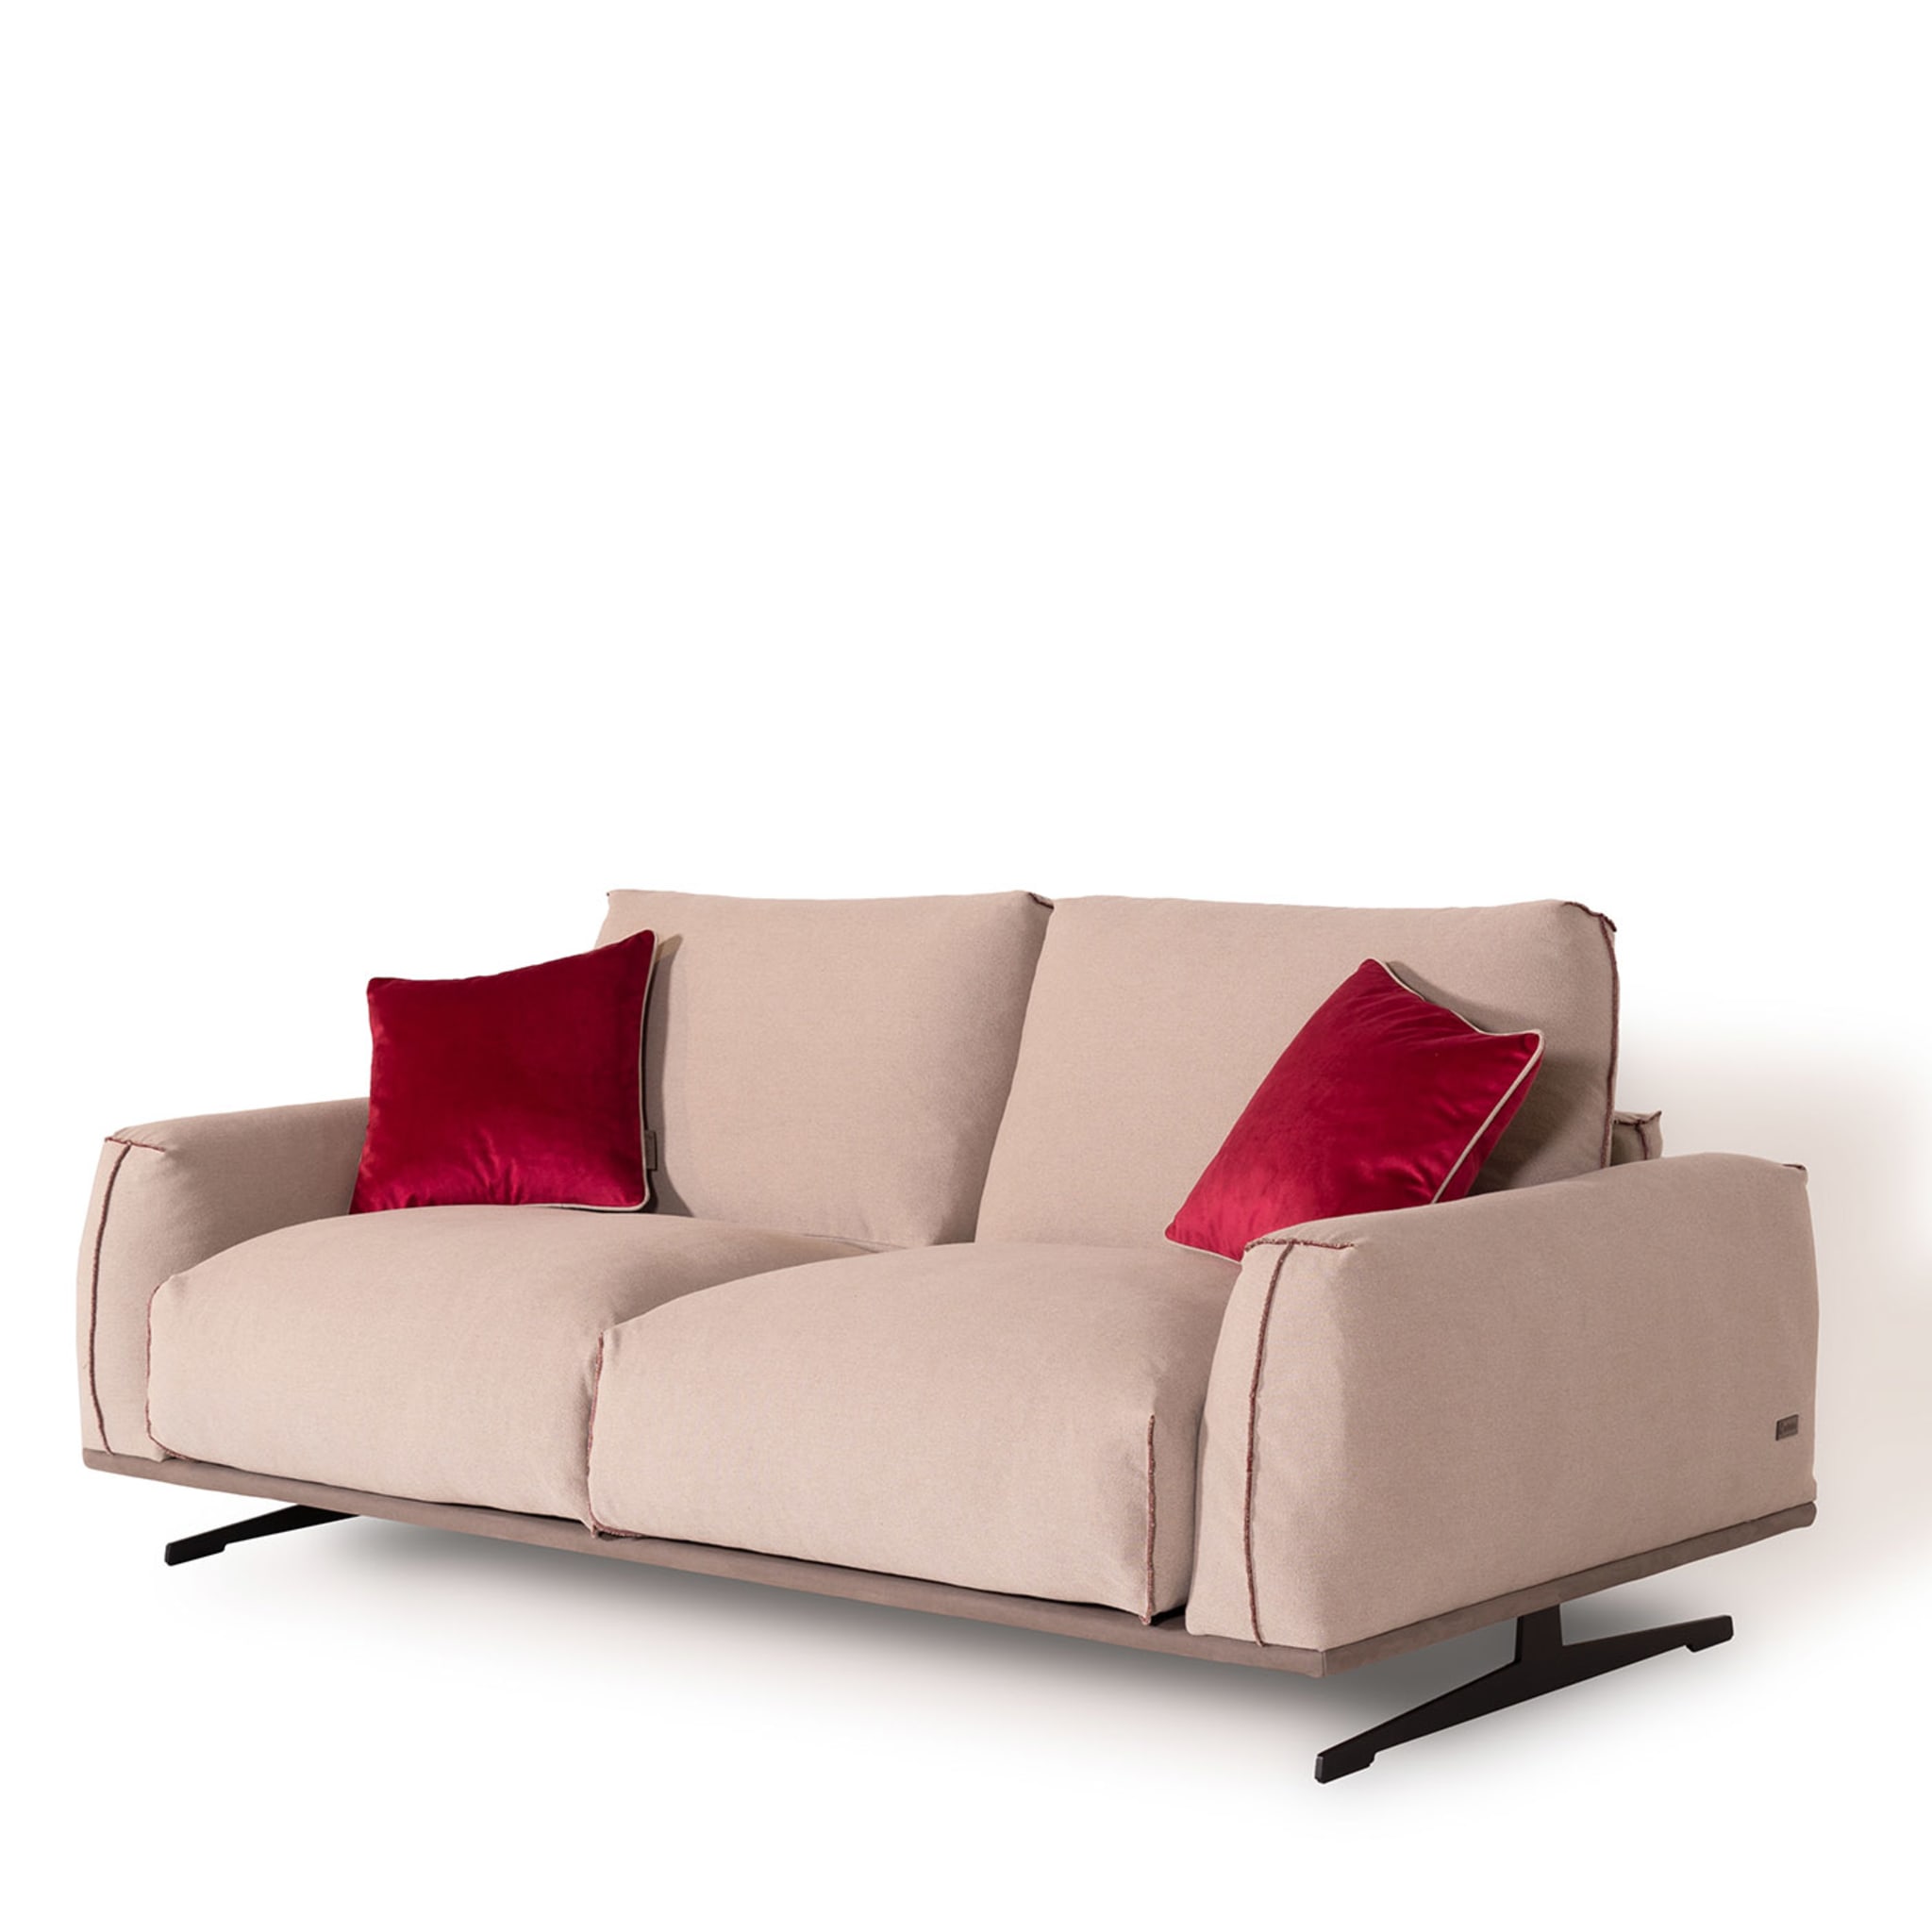 Boboli 2 Seater Sofa by Marco and Giulio Mantellassi - Alternative view 1